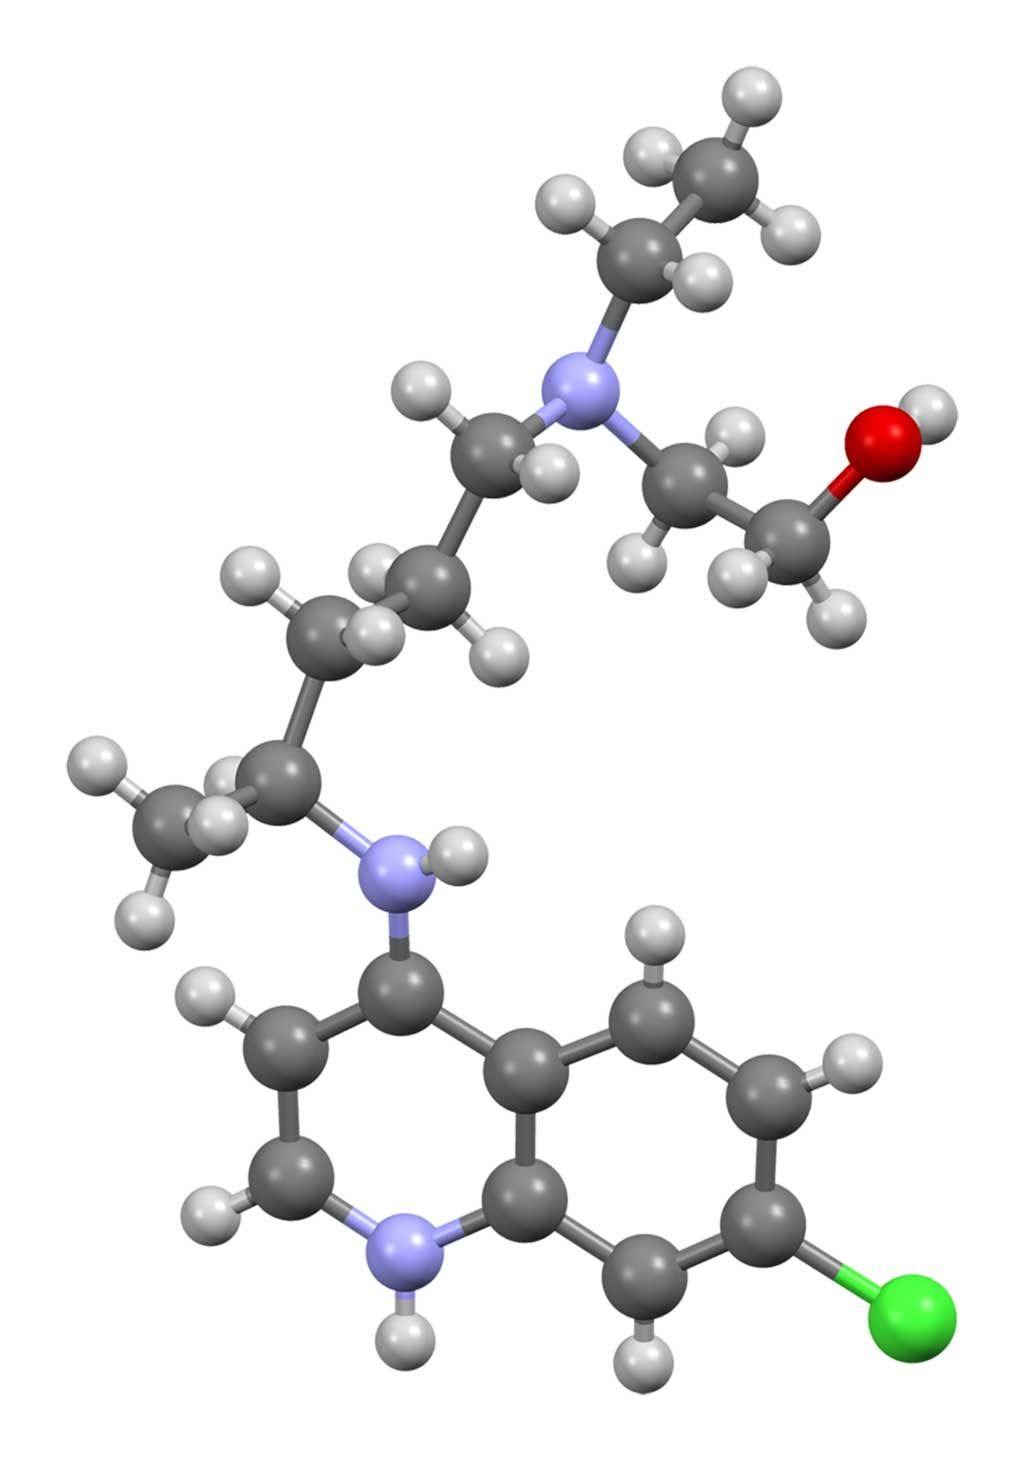 Imagen: Modelo tridimensional de una molécula de hidroxicloroquina (Fotografía cortesía de Wikimedia Commons)